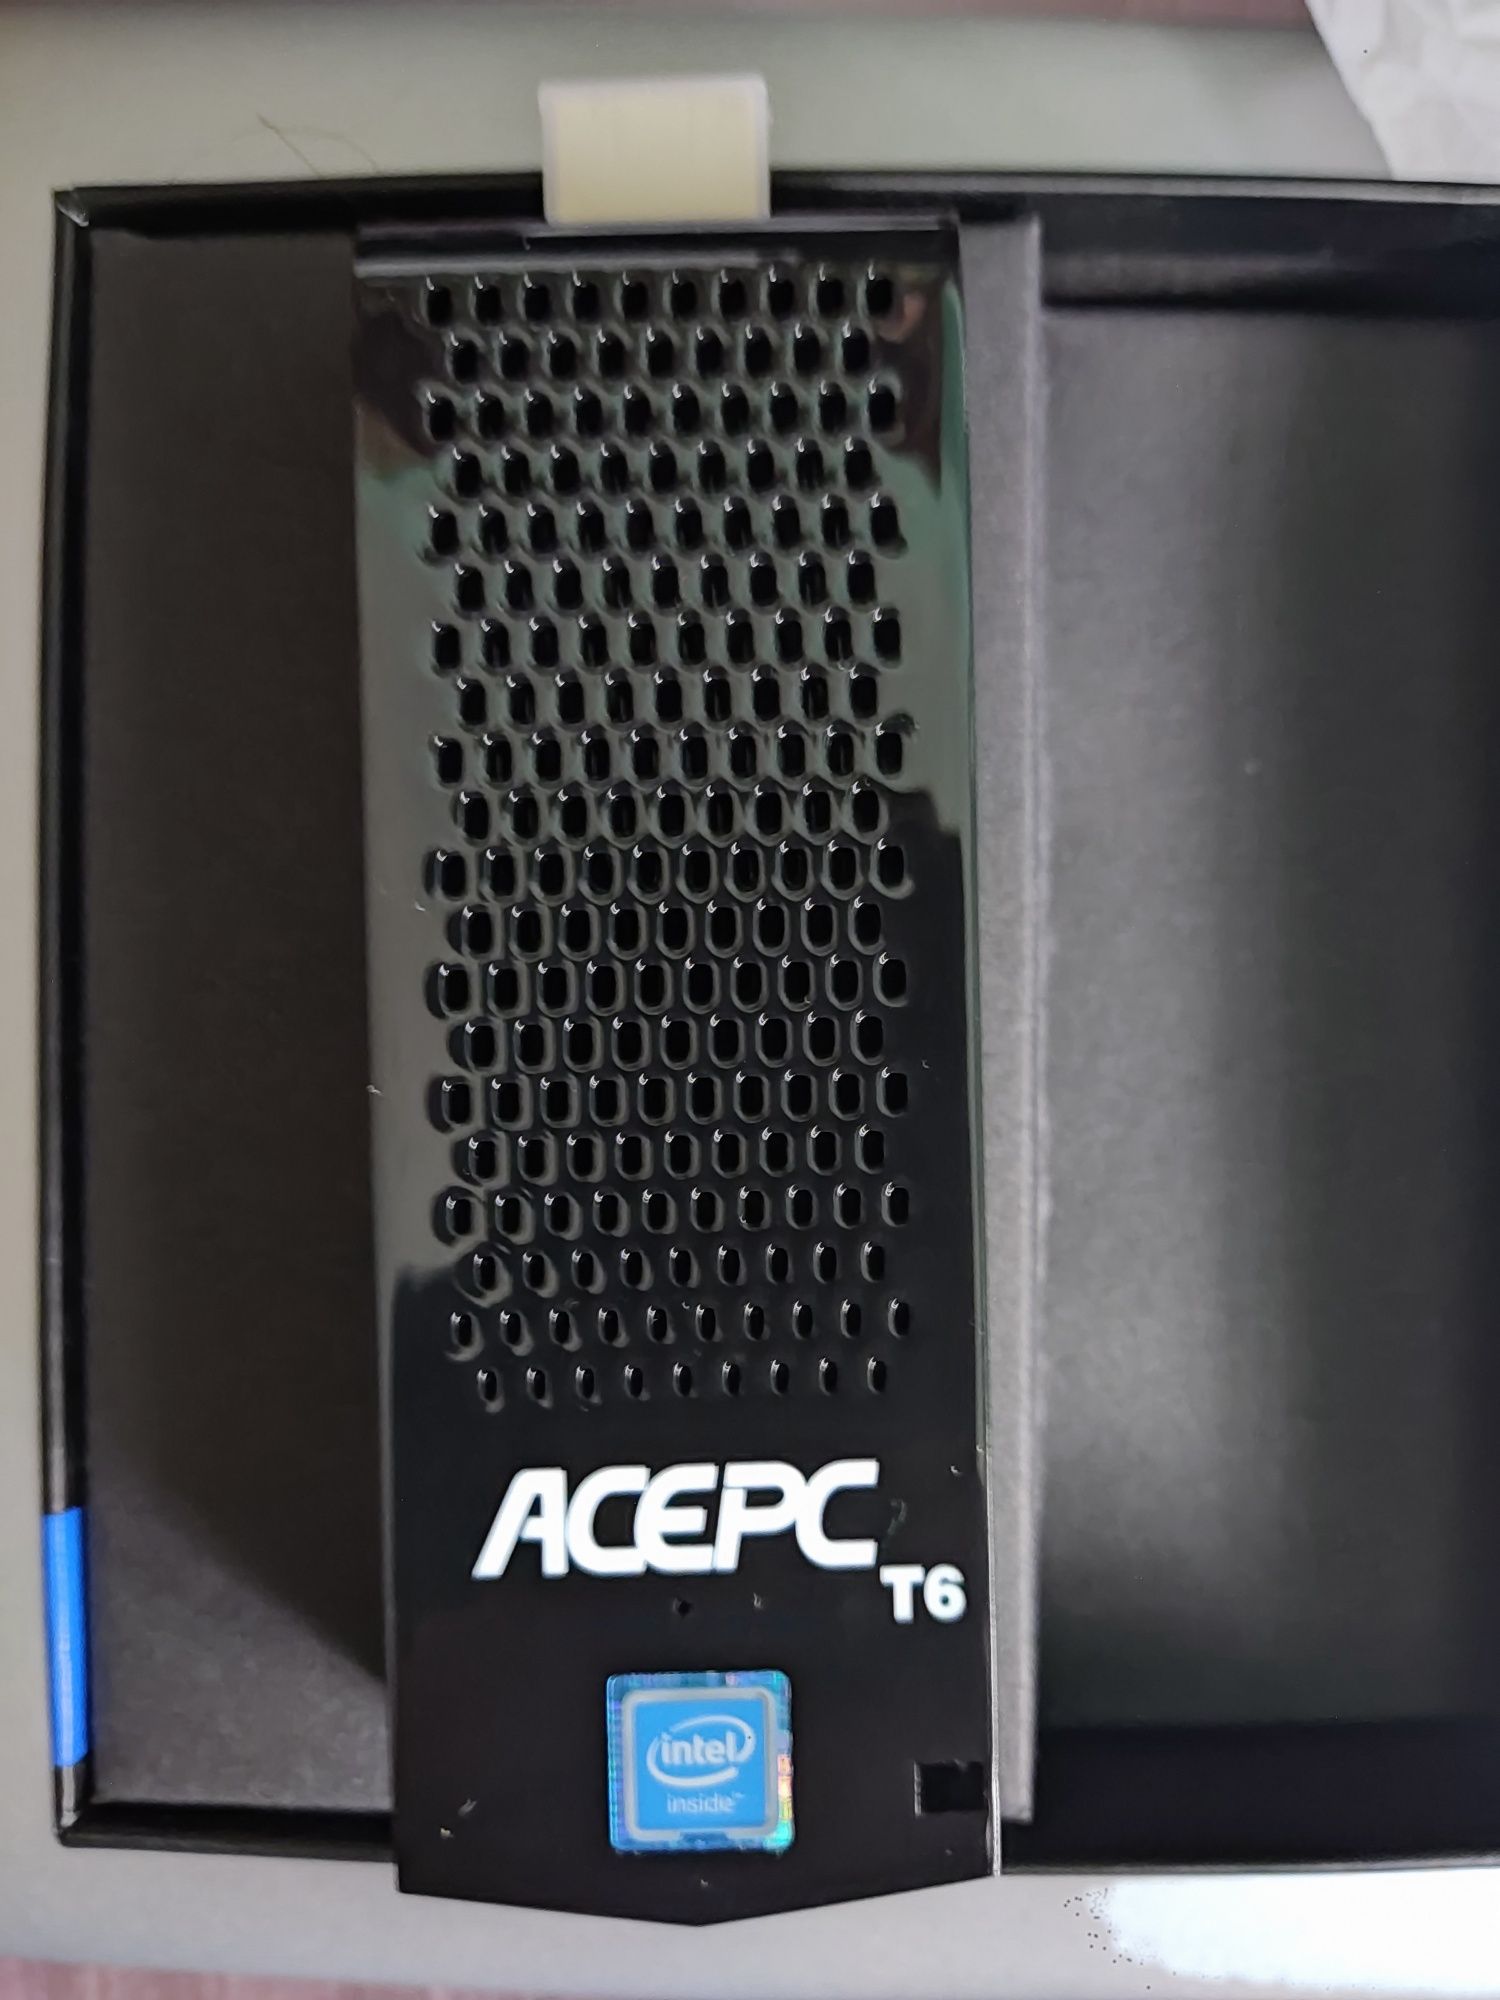 Mini Pc AcePc Pocket intel Z8350 8Gb Ram 128Gb Ssd Windows 10